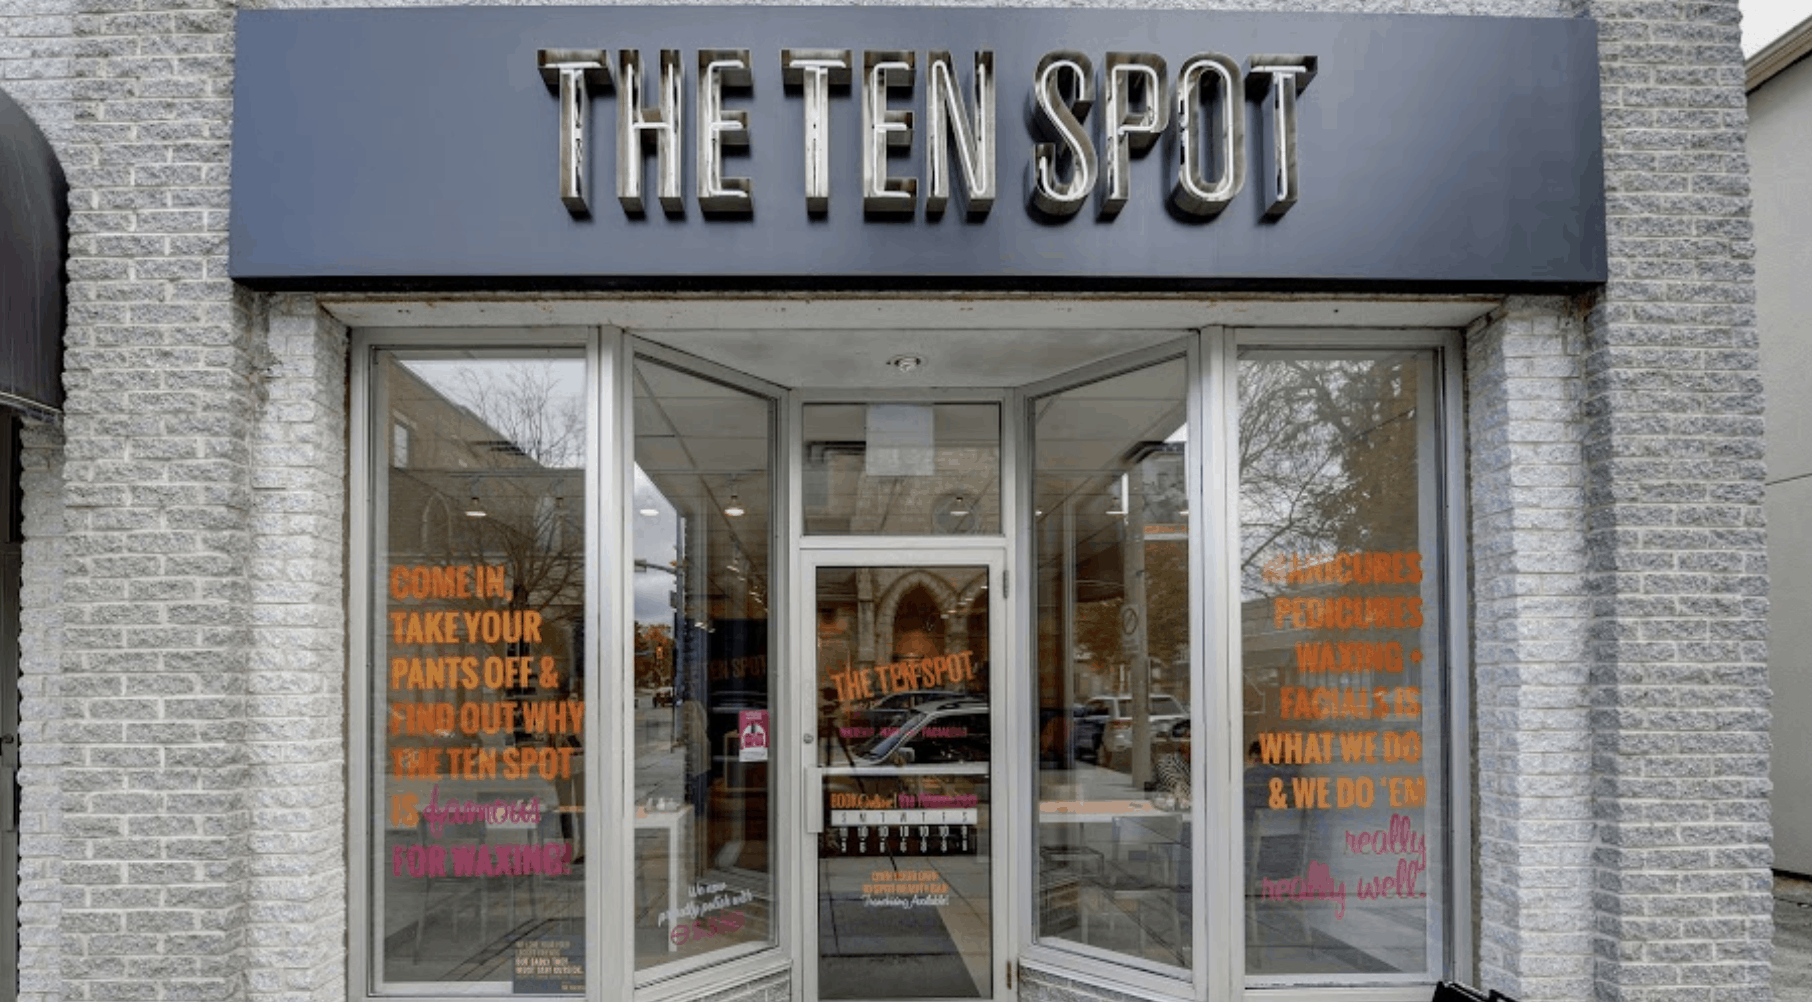 THE TEN SPOT® beauty bar storefront in guelph